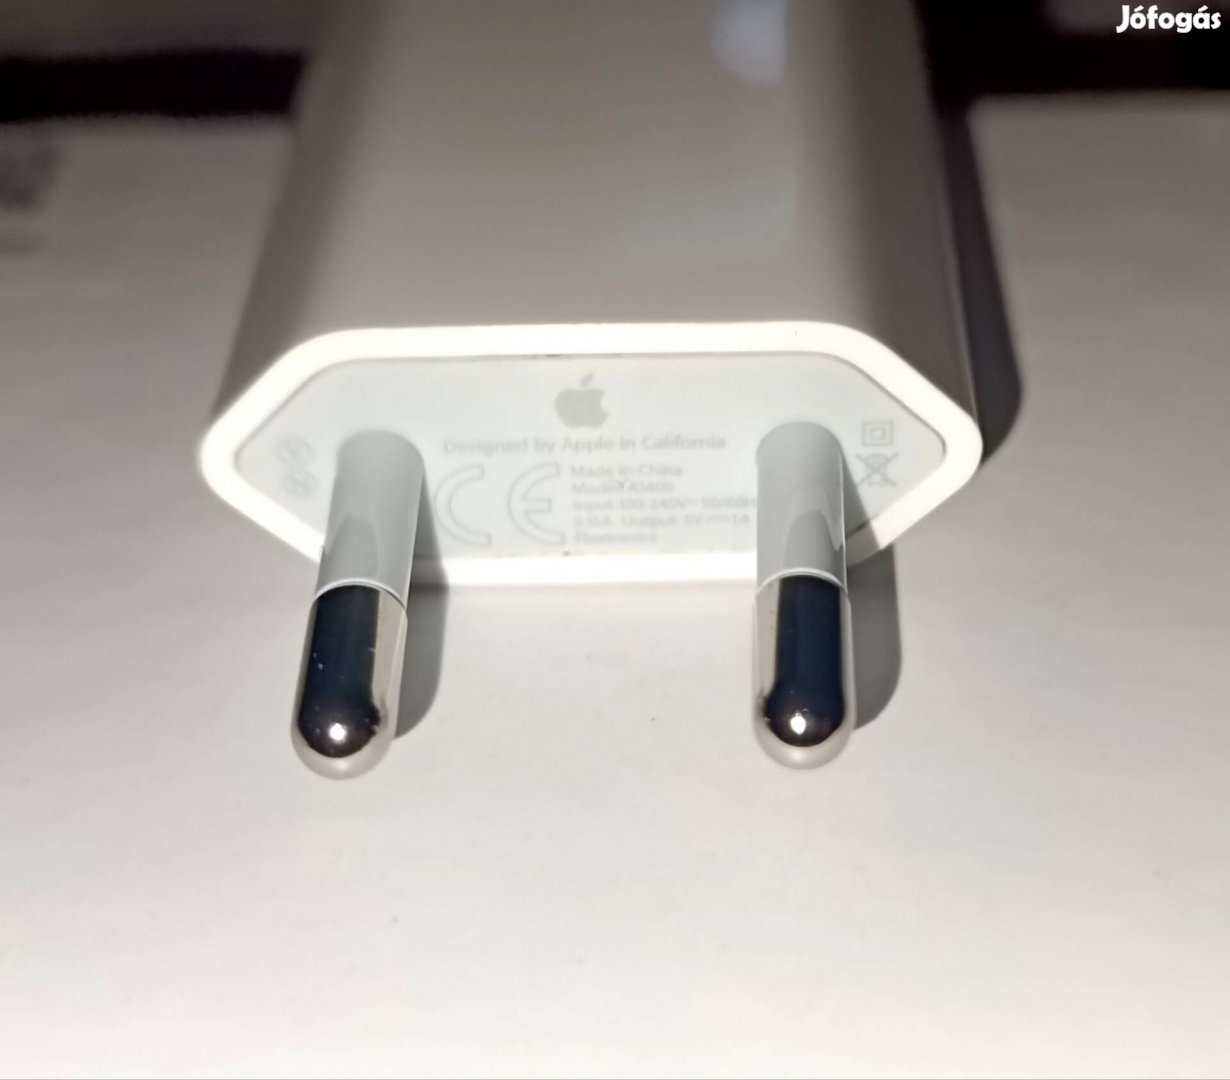 Apple iphone gyári töltő / hálózati adapter, garantáltan eredeti!!